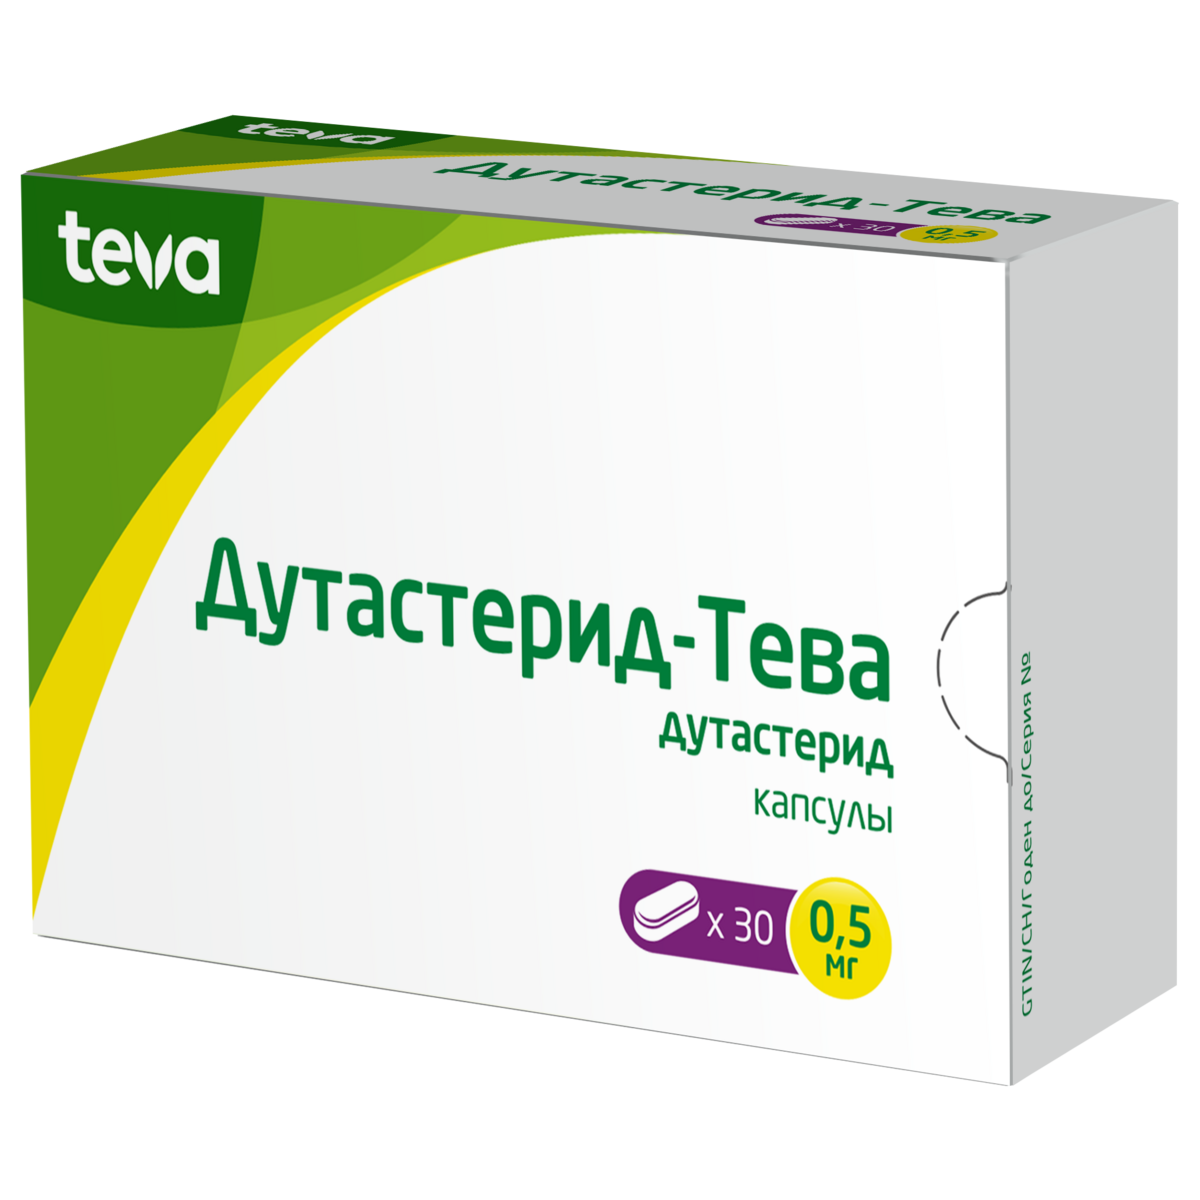 Дутастерид-Тева капсулы 0,5 мг 30 шт. от 966.5 ₽ в аптеках Тюмени .